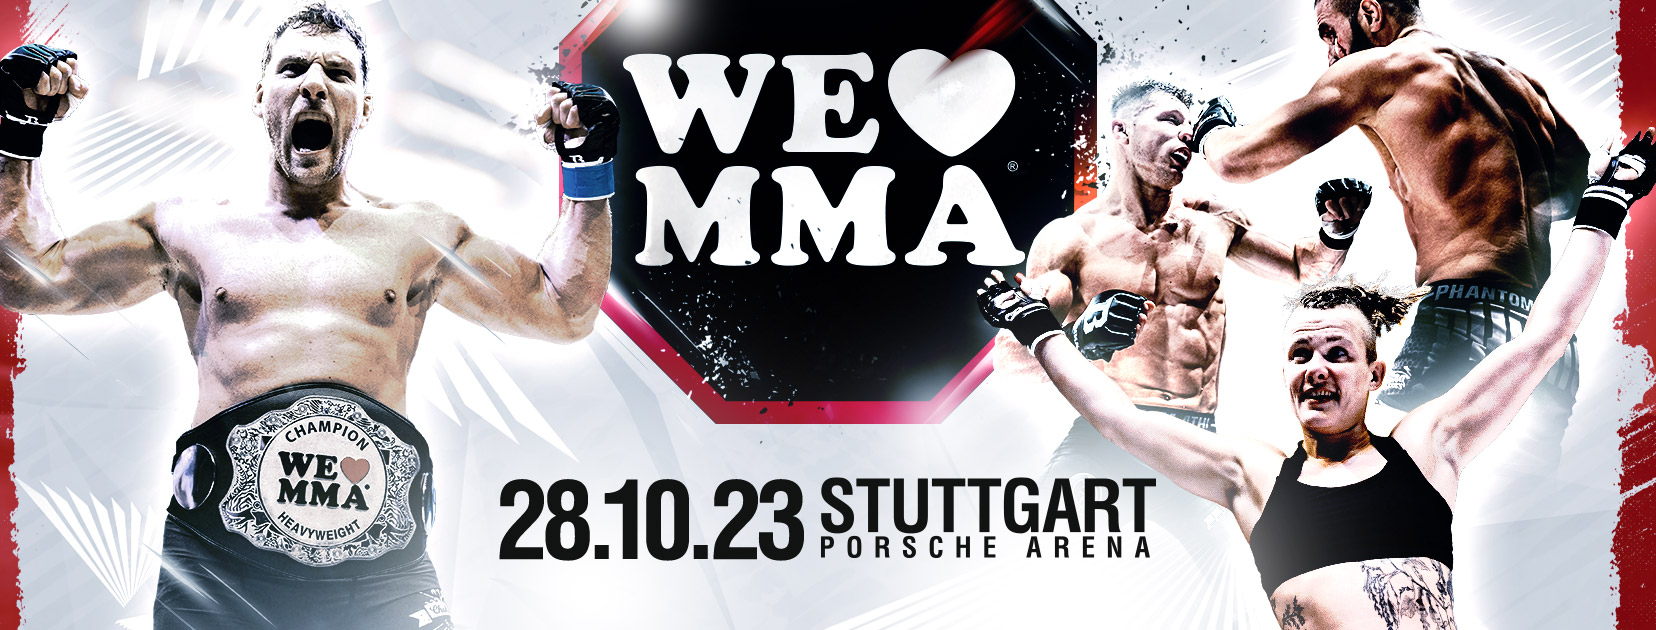 We love MMA Stuttgart